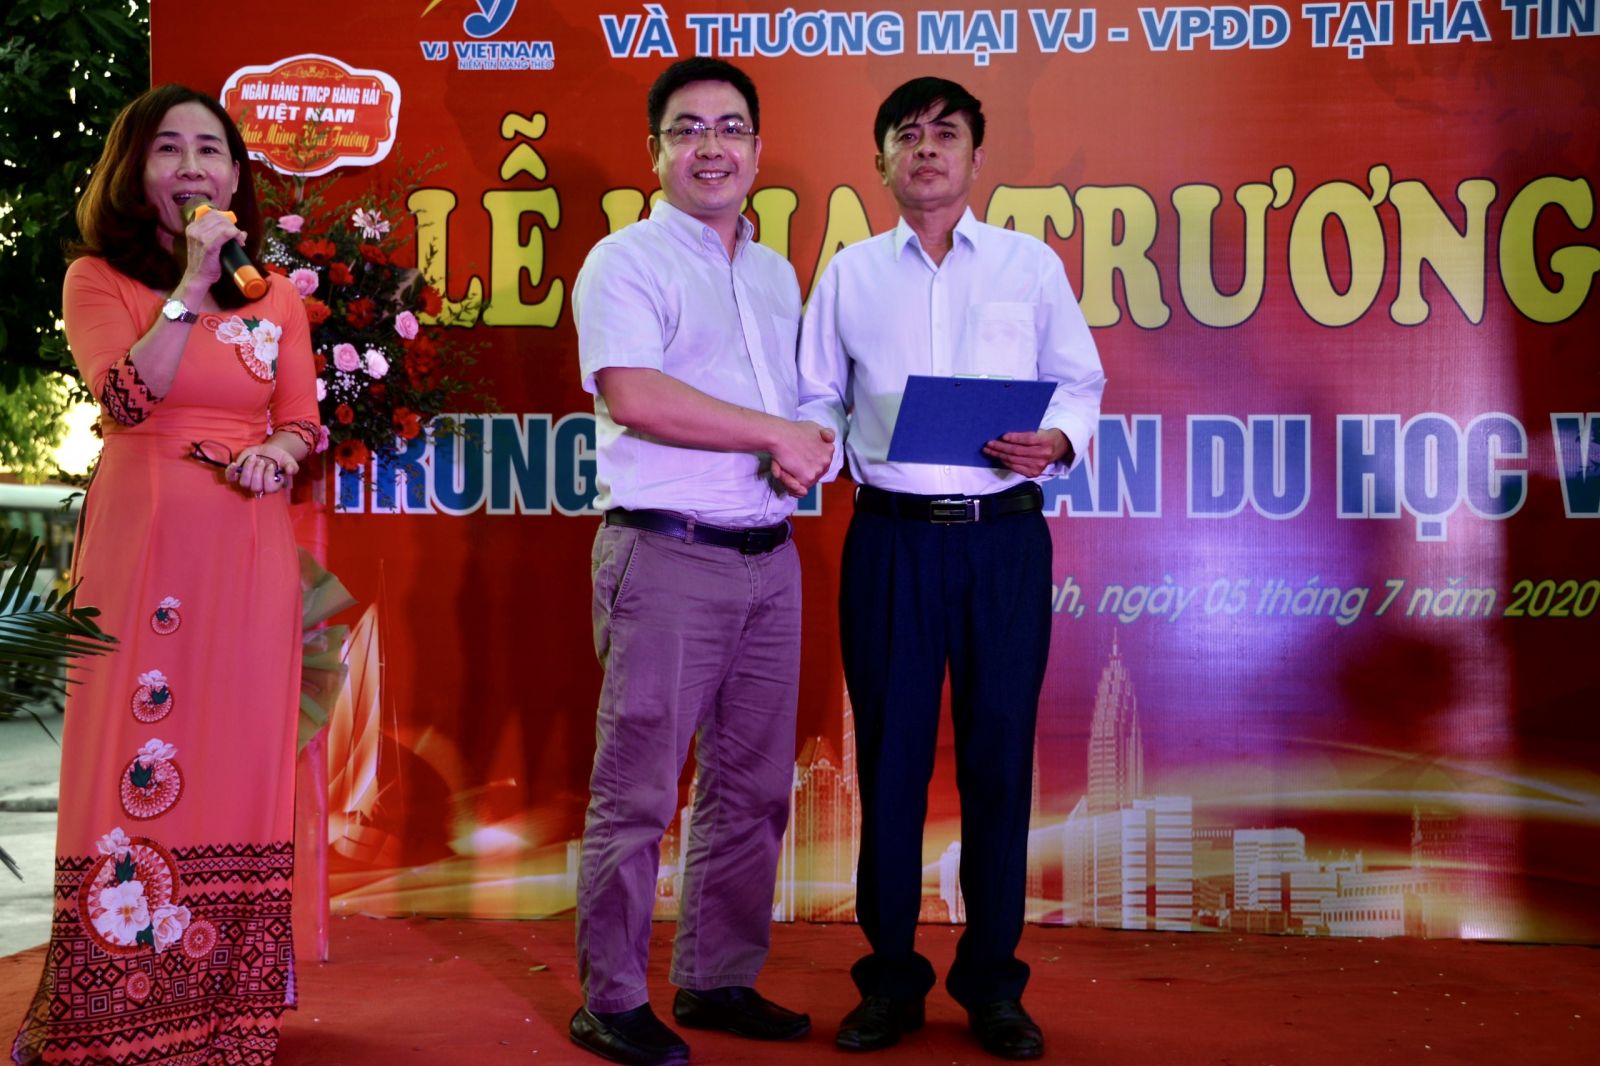 Ông Đinh Văn Hảo - Chủ tịch HĐQT bắt tay hợp tác với ông Nguyễn Tuấn Thiệm – Giám Đốc VPĐD Hà Tĩnh